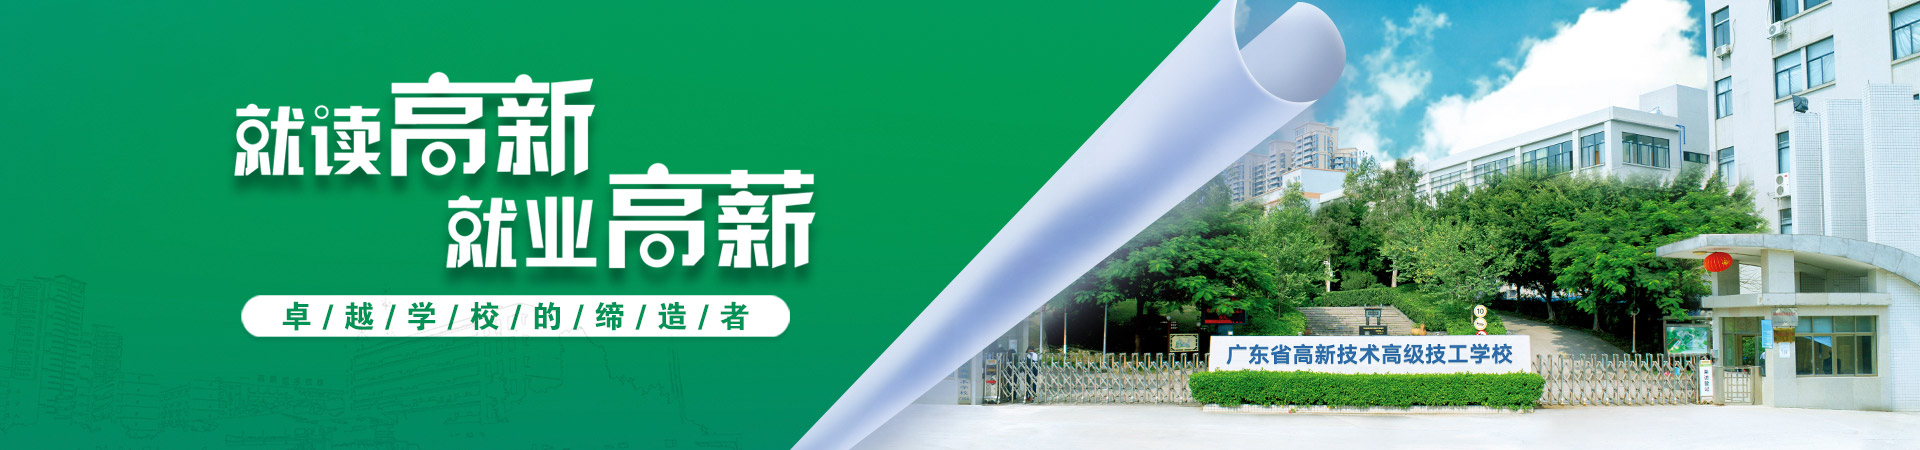 廣州高新教育集團旗下廣東省高新技術技工學校